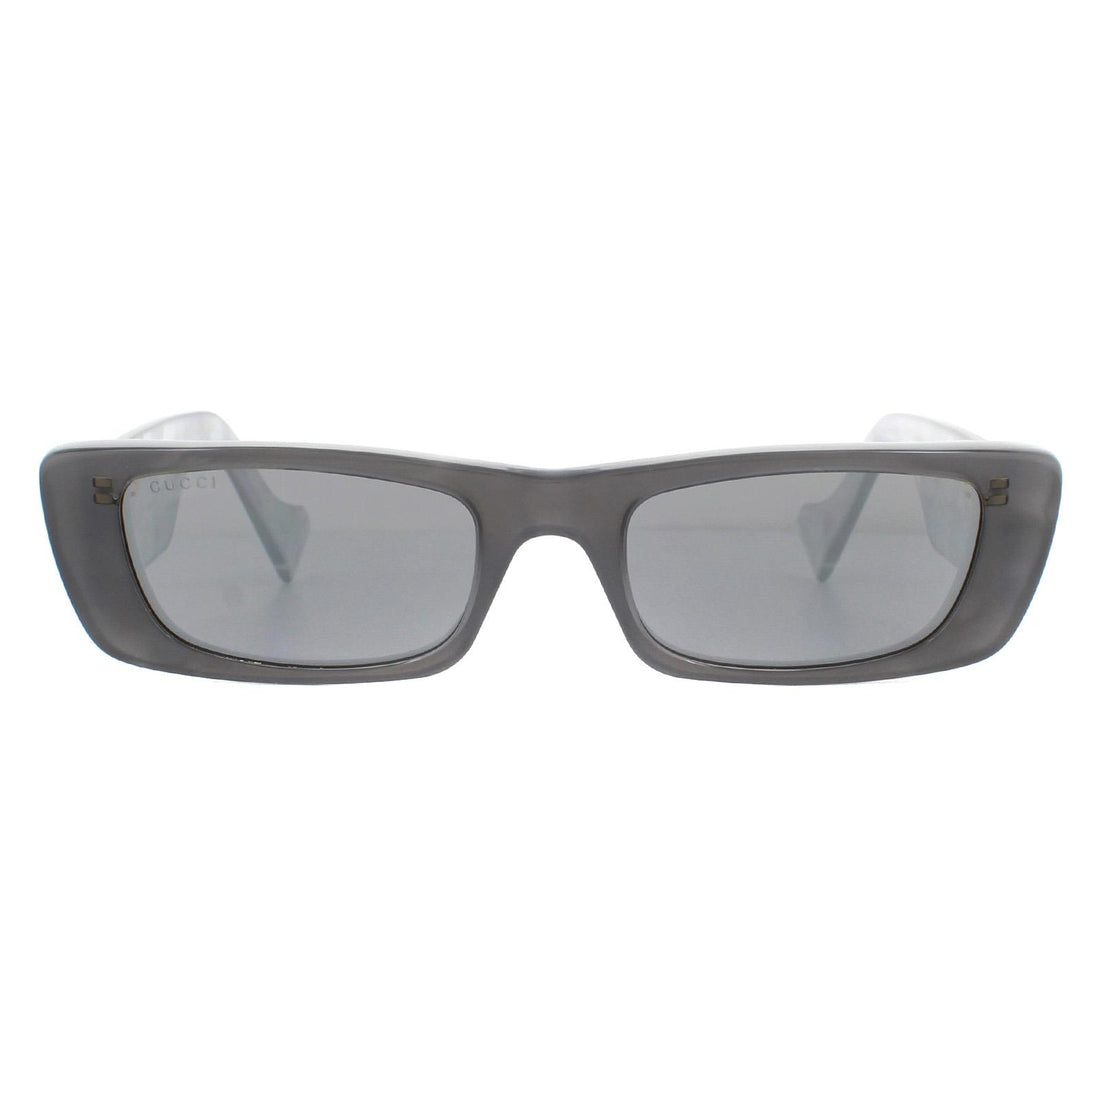 Gucci GG0516S Sunglasses Grey / Silver